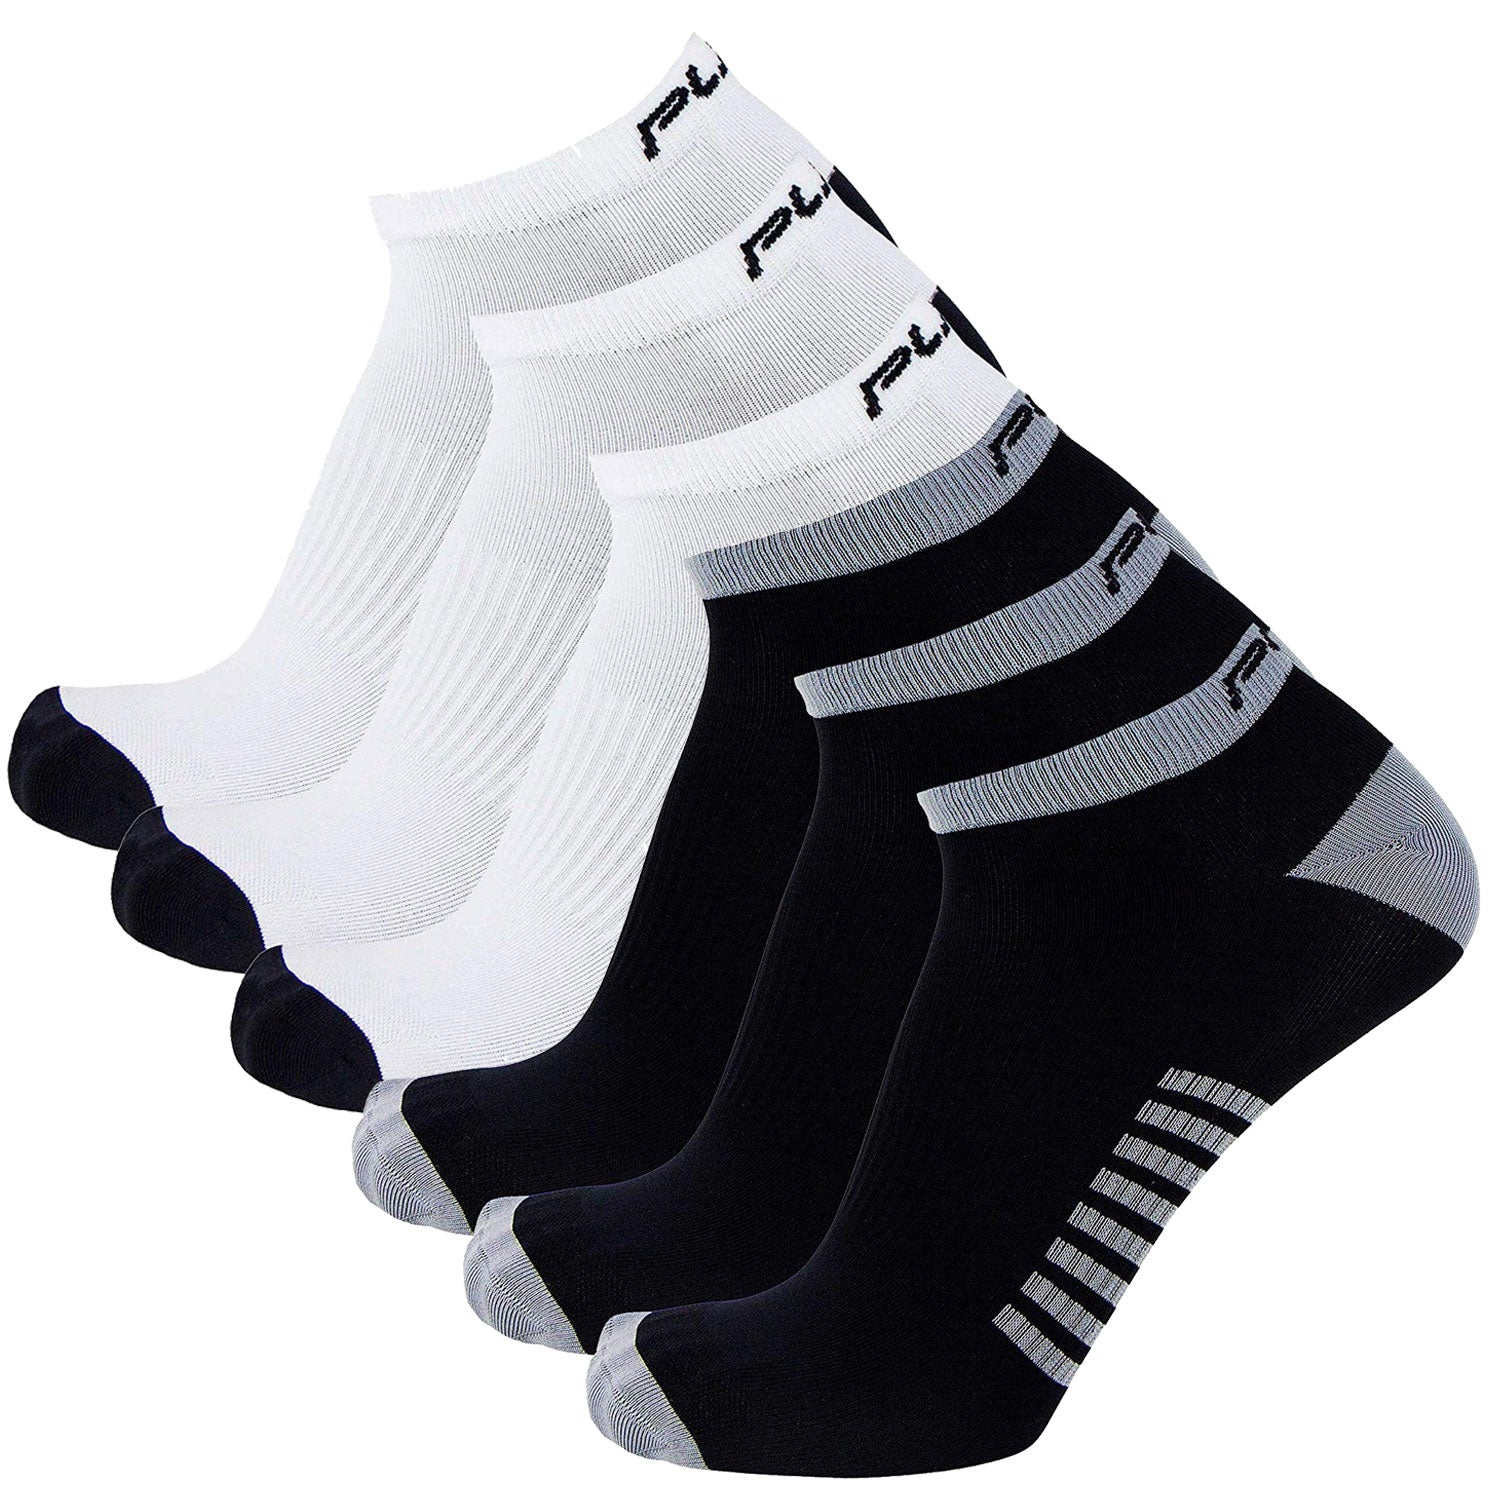 Ultra-Thin Running Socks